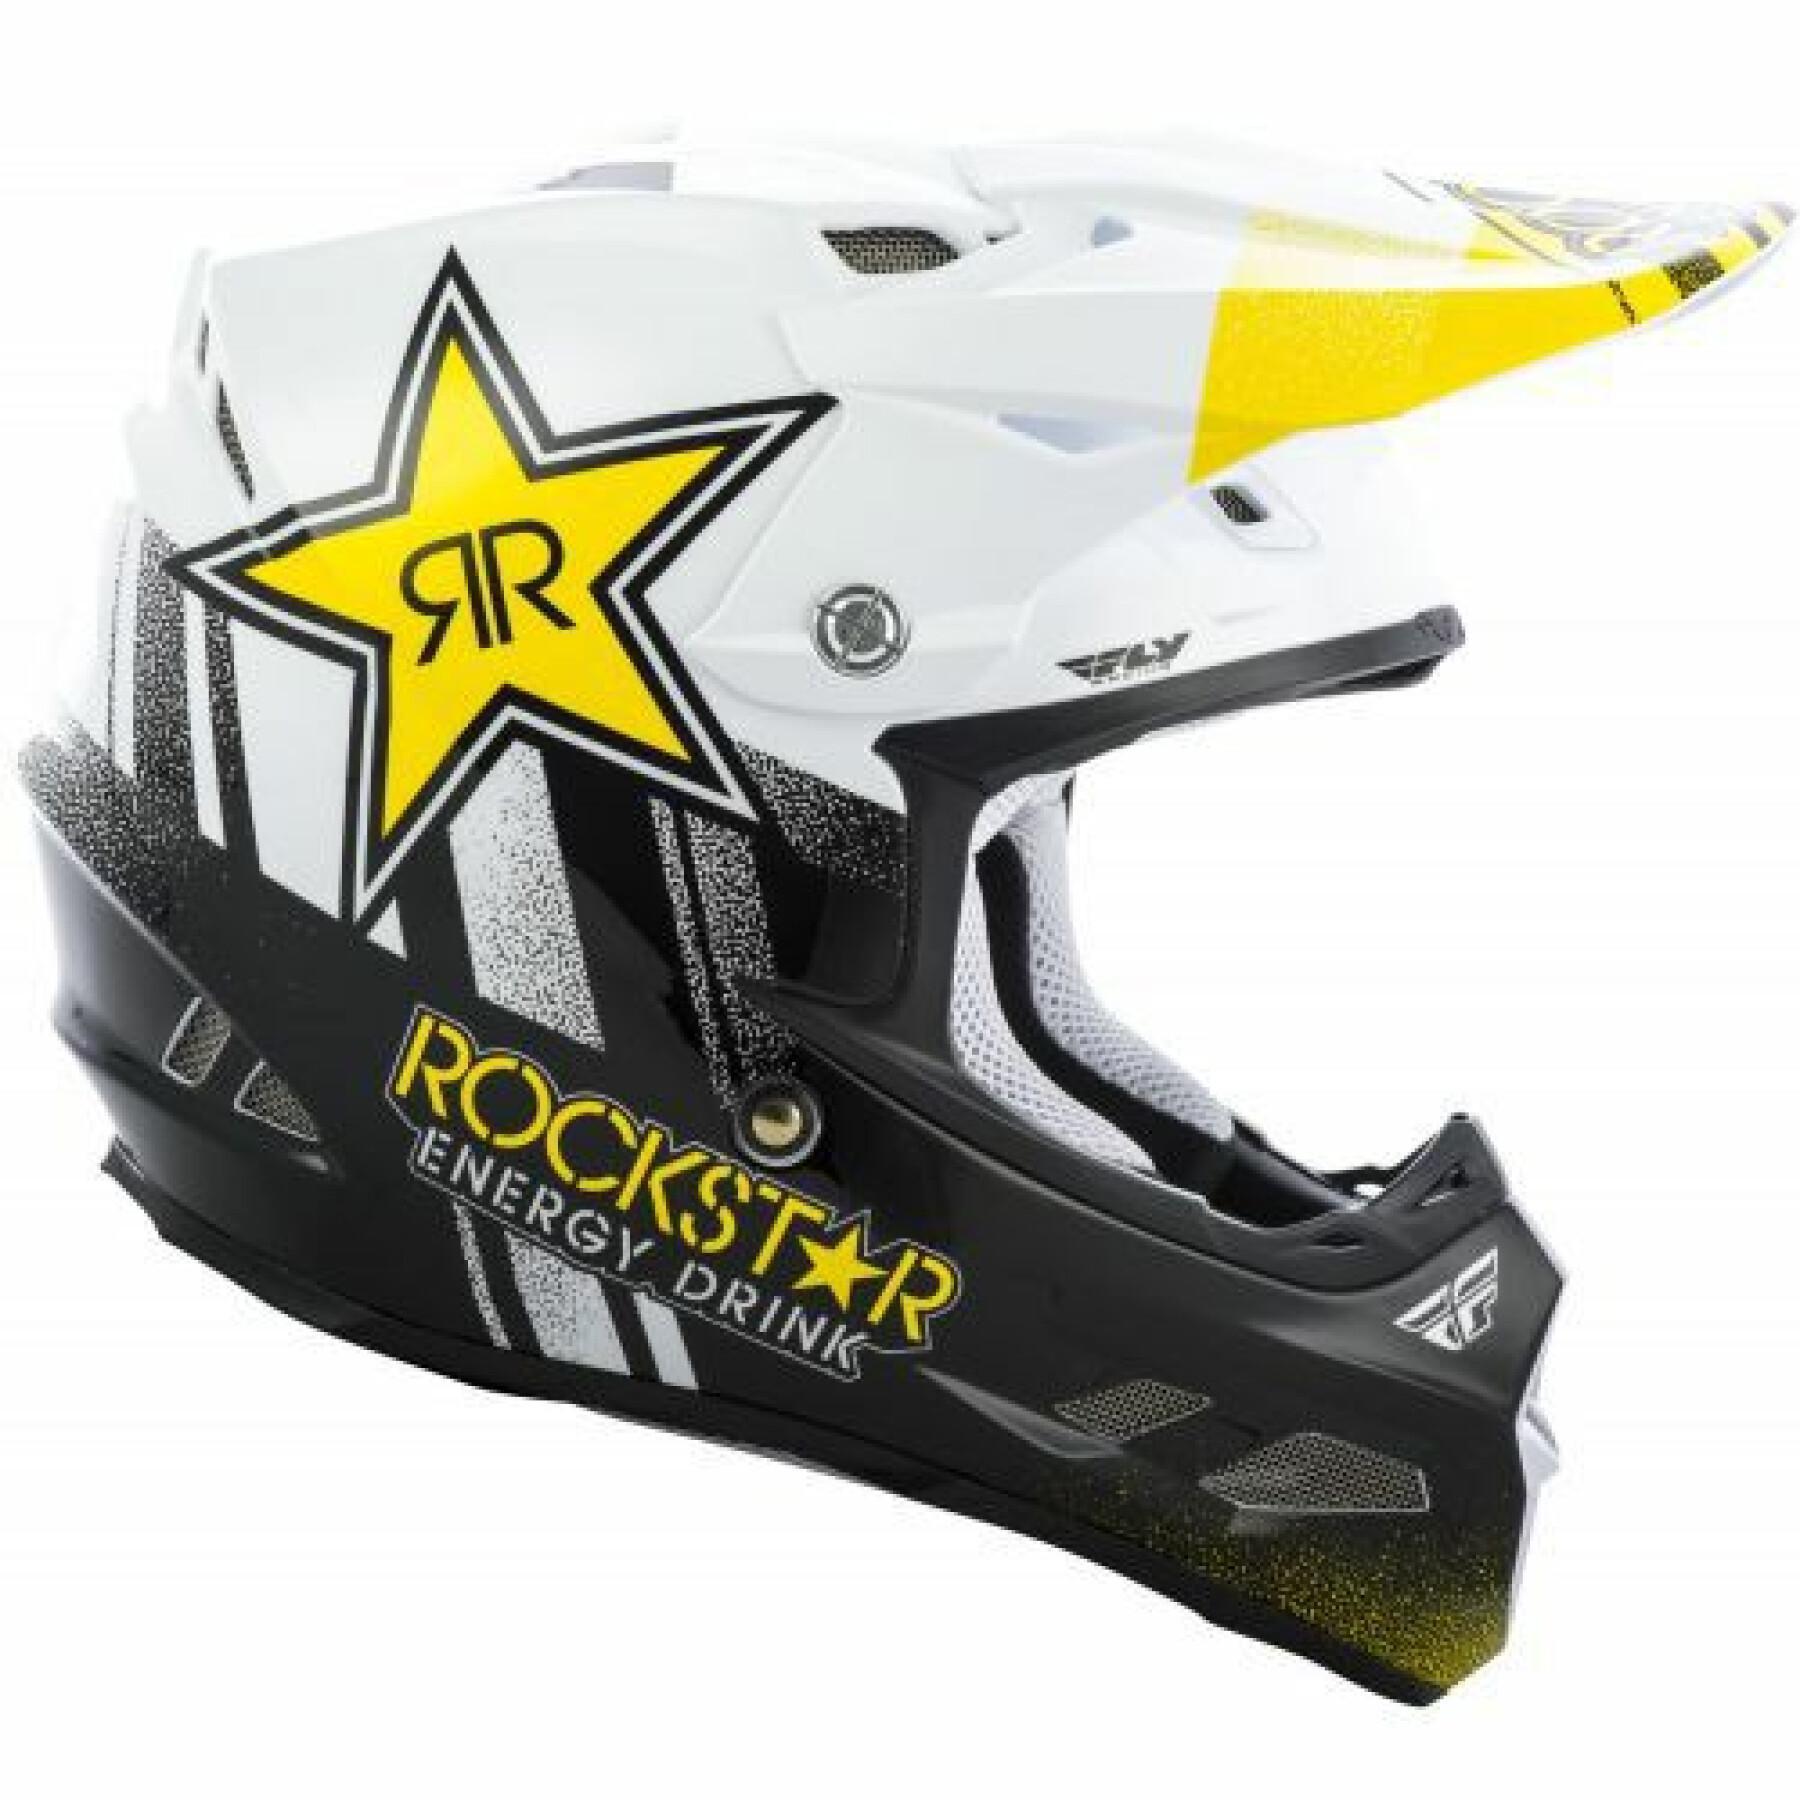 Motocrosshjälm Fly Racing F2 Rockstar 2020